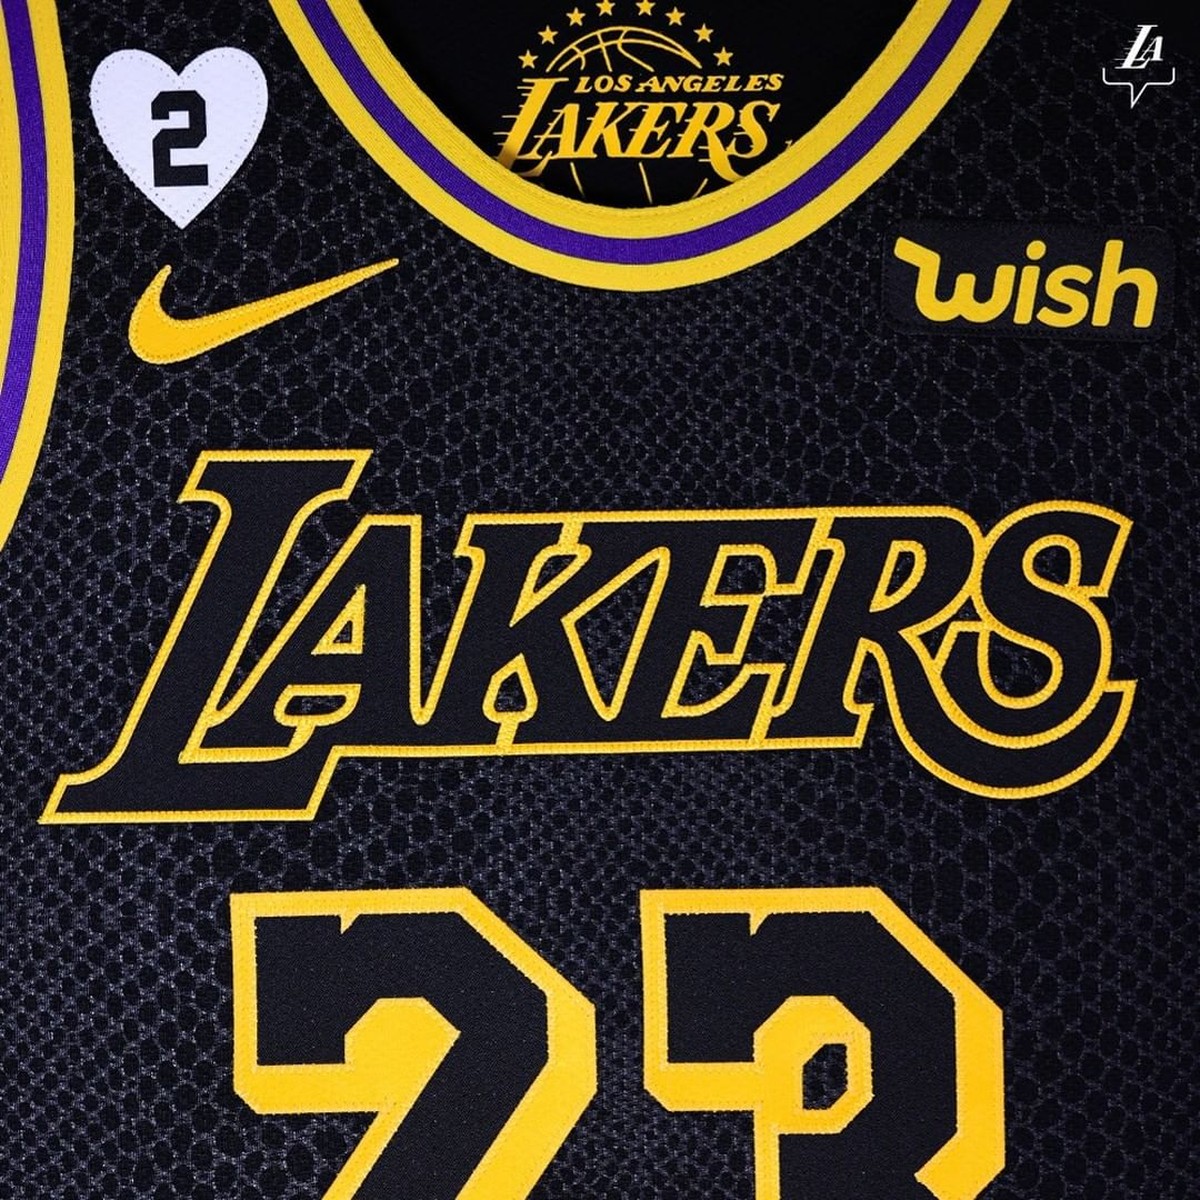 Qual o símbolo dos Lakers?